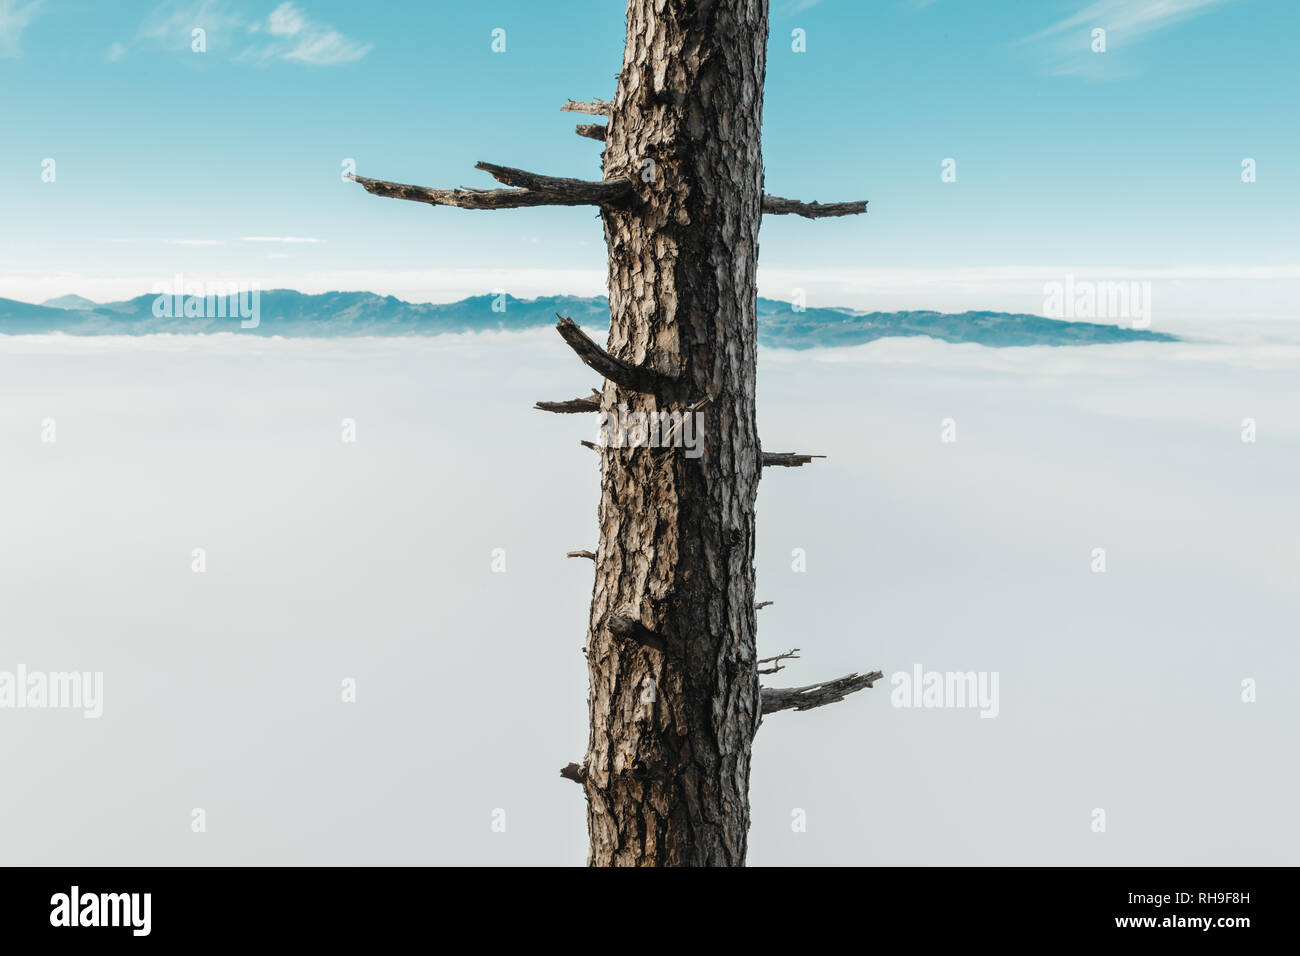 Arbre avec branches sciées en face de matin brouillard et gamme de montagne Banque D'Images